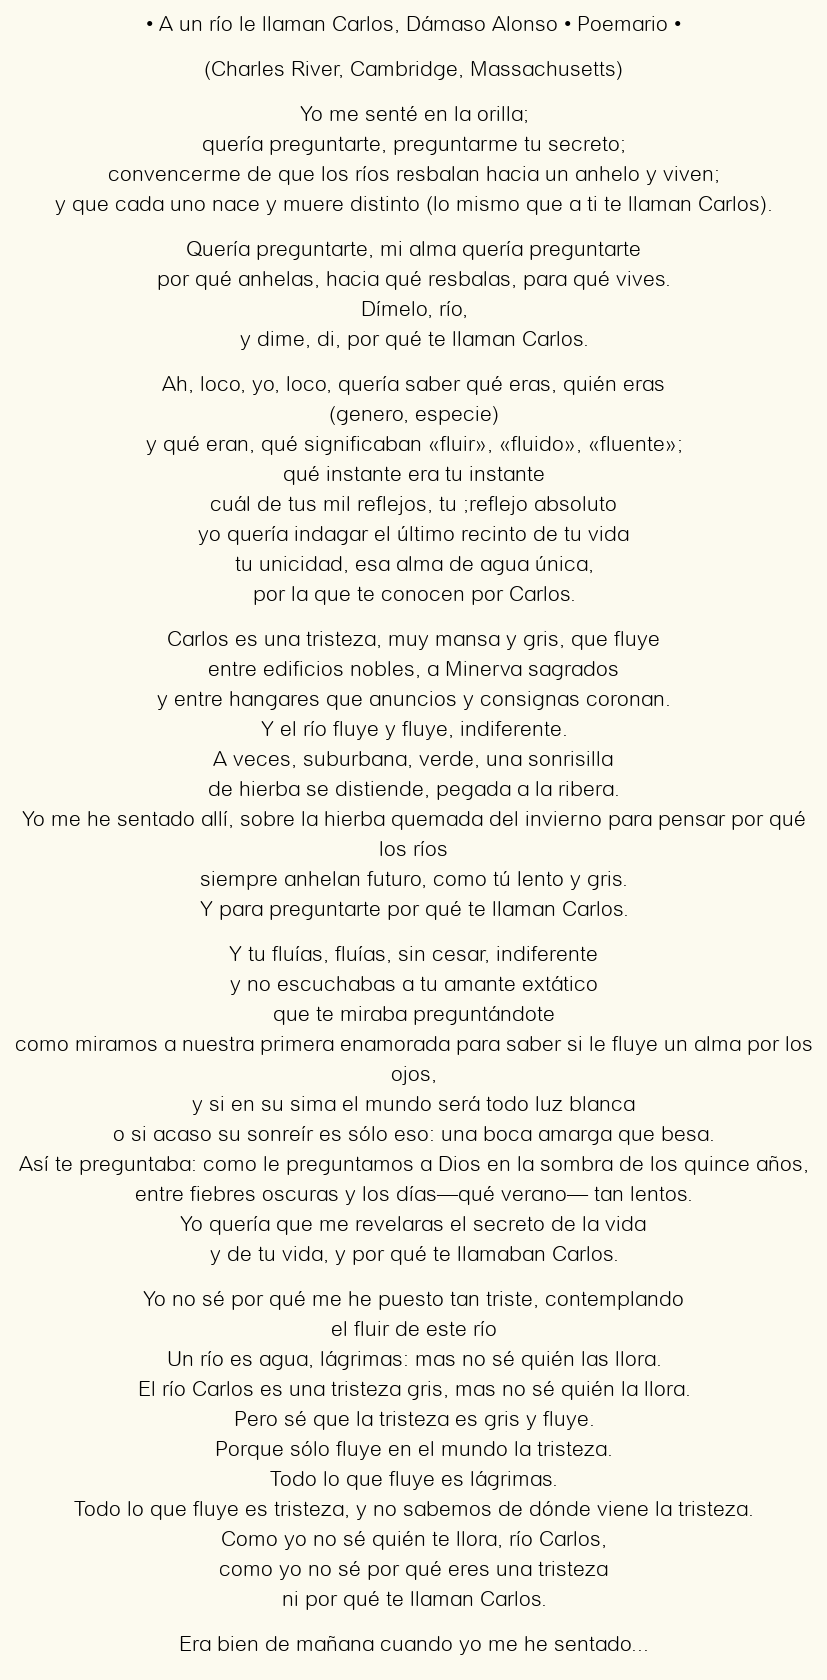 Imagen con el poema A un río le llaman Carlos, por Dámaso Alonso